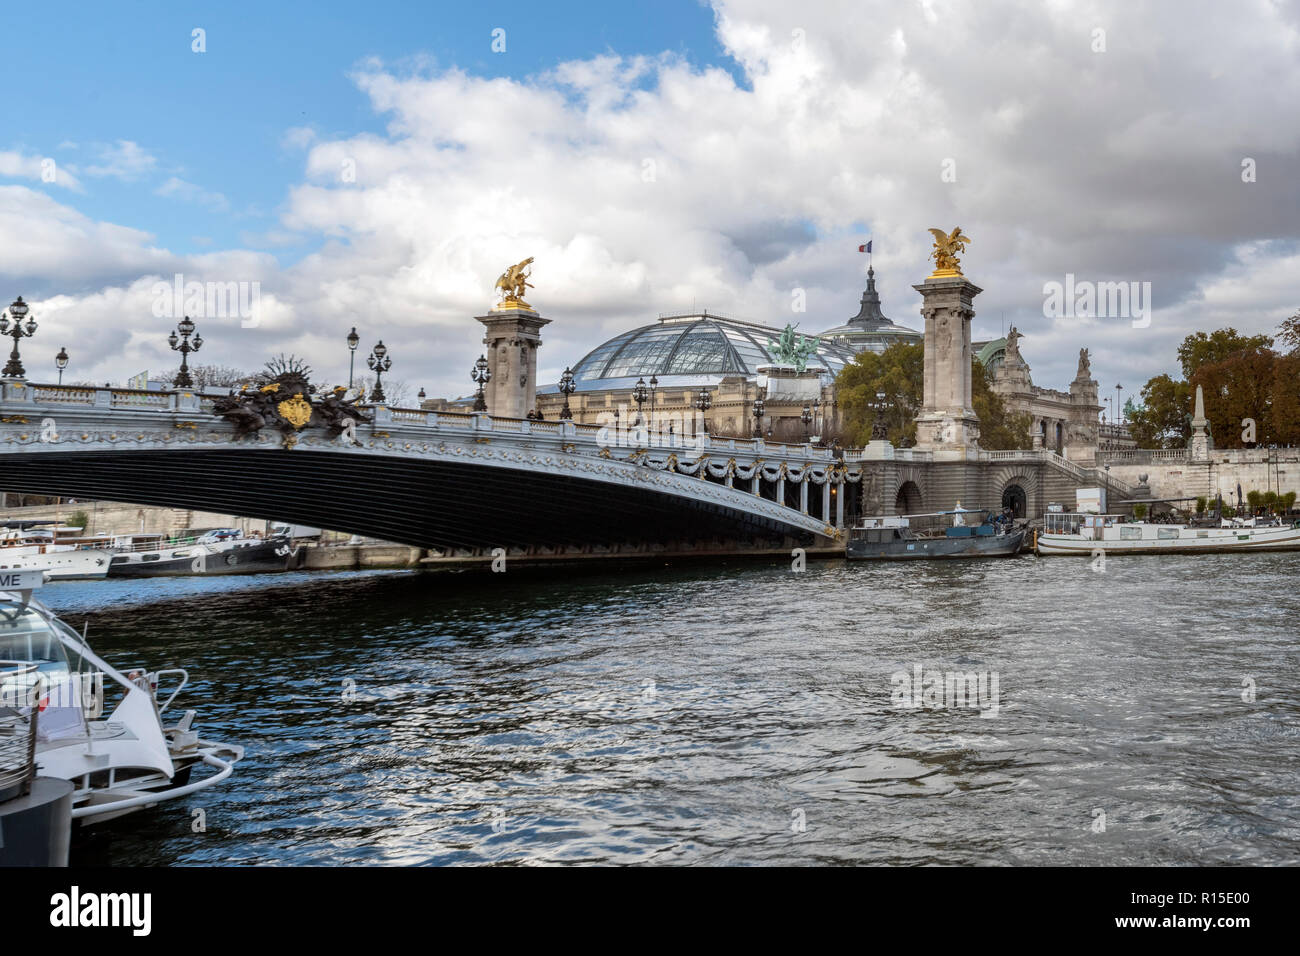 Il Pont Alexandre III oltre la Senna è un deck ponte di arco che si estende oltre la Senna a Parigi. Esso collega il quartiere degli Champs-Élysées con quelle di Foto Stock